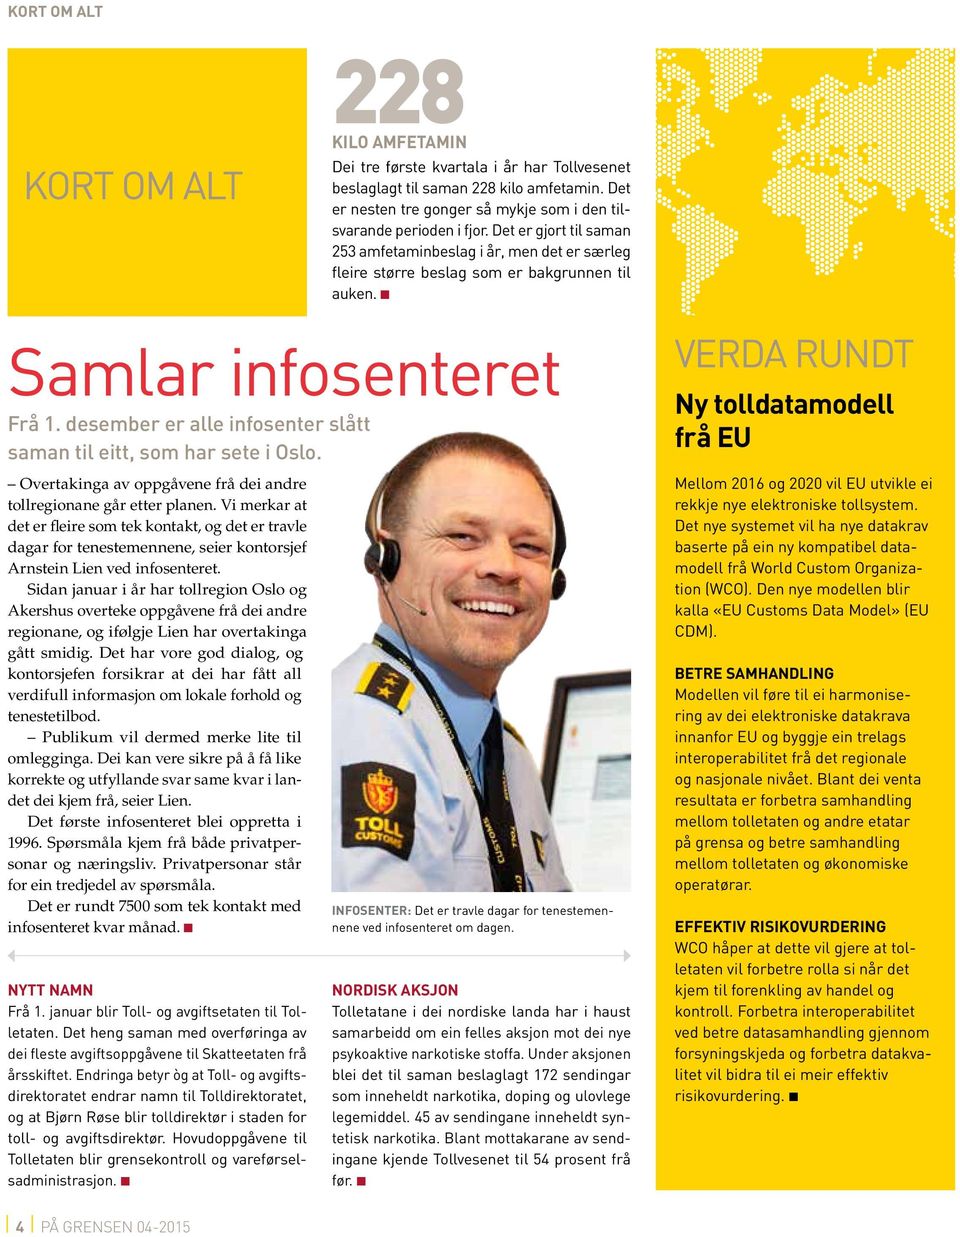 n Samlar infosenteret Frå 1. desember er alle infosenter slått saman til eitt, som har sete i Oslo.